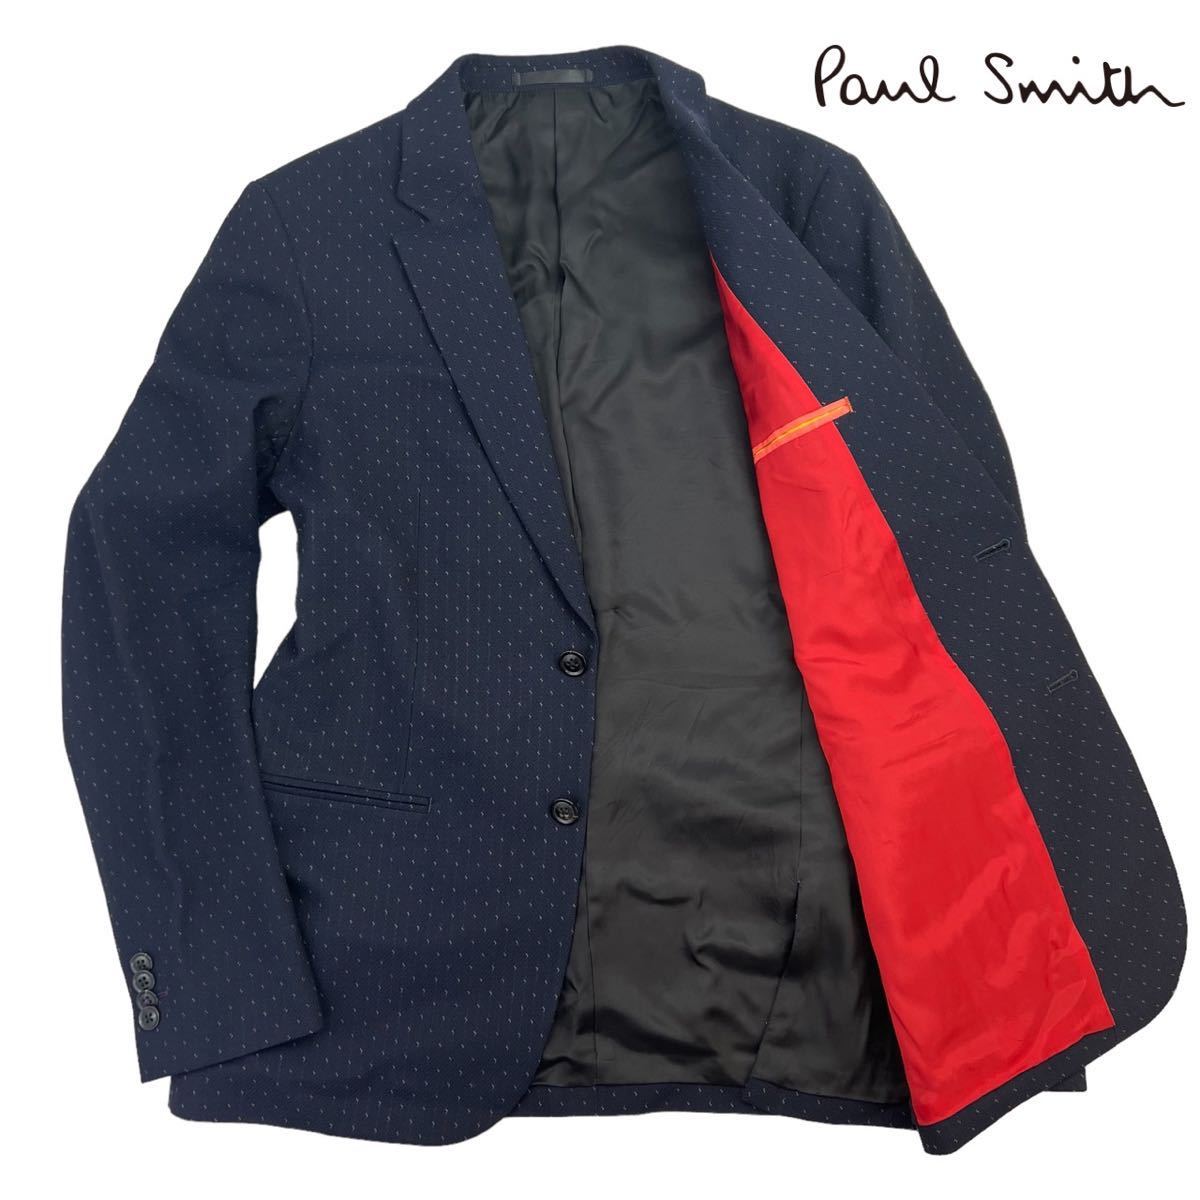 新品同様 Paul Smith ポールスミス 2Bテーラードジャケット サイズL 濃紺 ネイビー 総柄 美シルエット 日本製 上質 273058 裏地赤 A2575